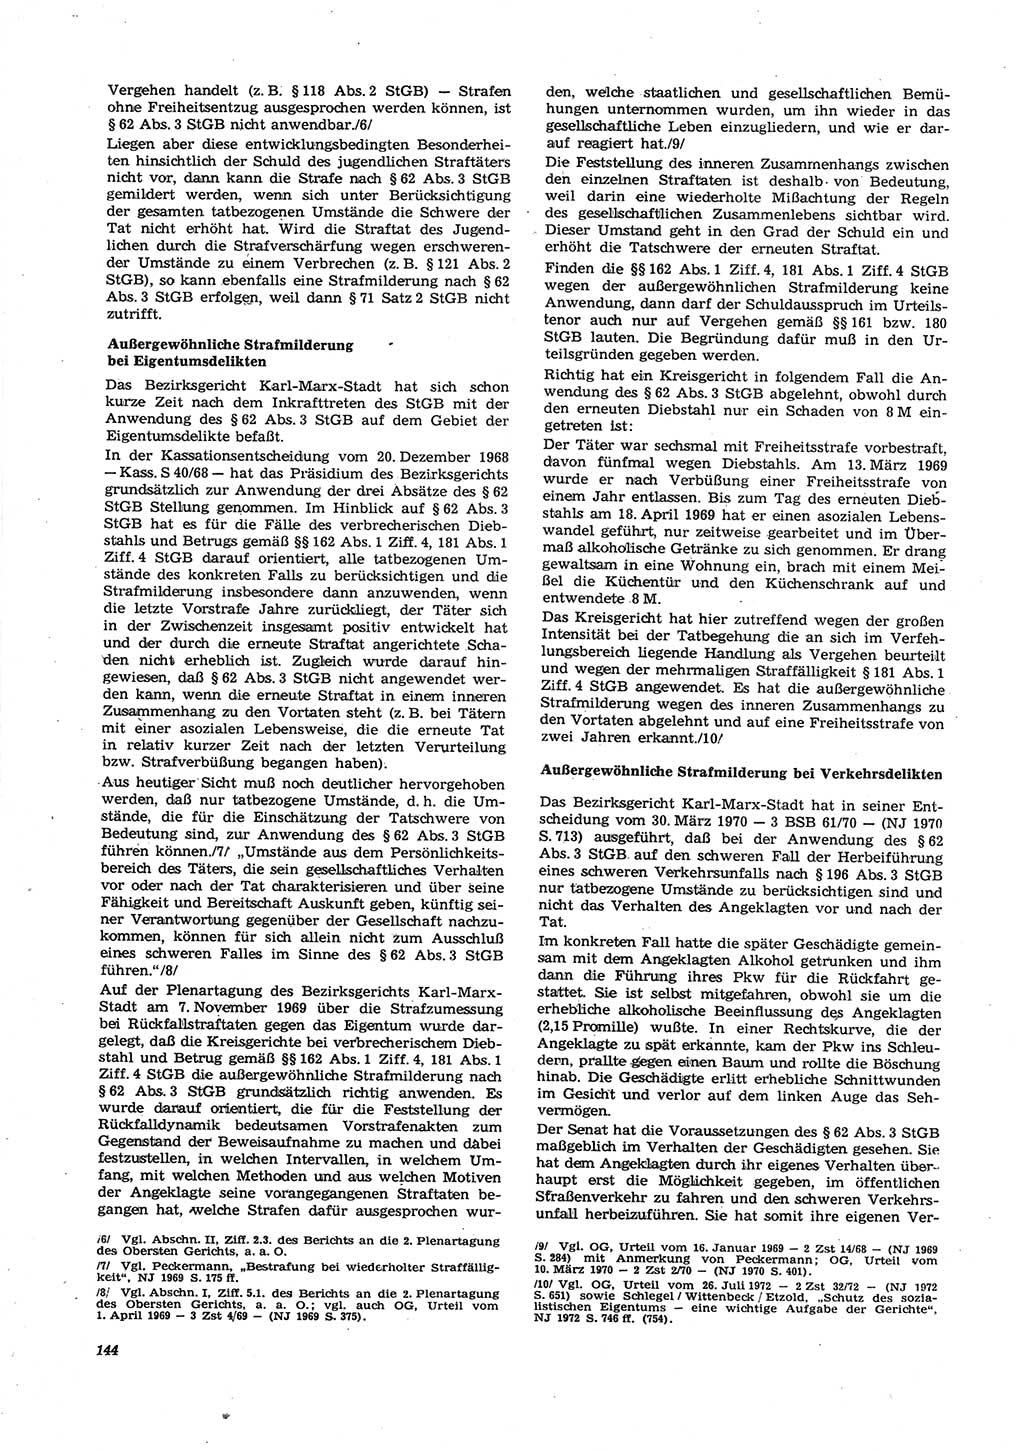 Neue Justiz (NJ), Zeitschrift für Recht und Rechtswissenschaft [Deutsche Demokratische Republik (DDR)], 27. Jahrgang 1973, Seite 144 (NJ DDR 1973, S. 144)